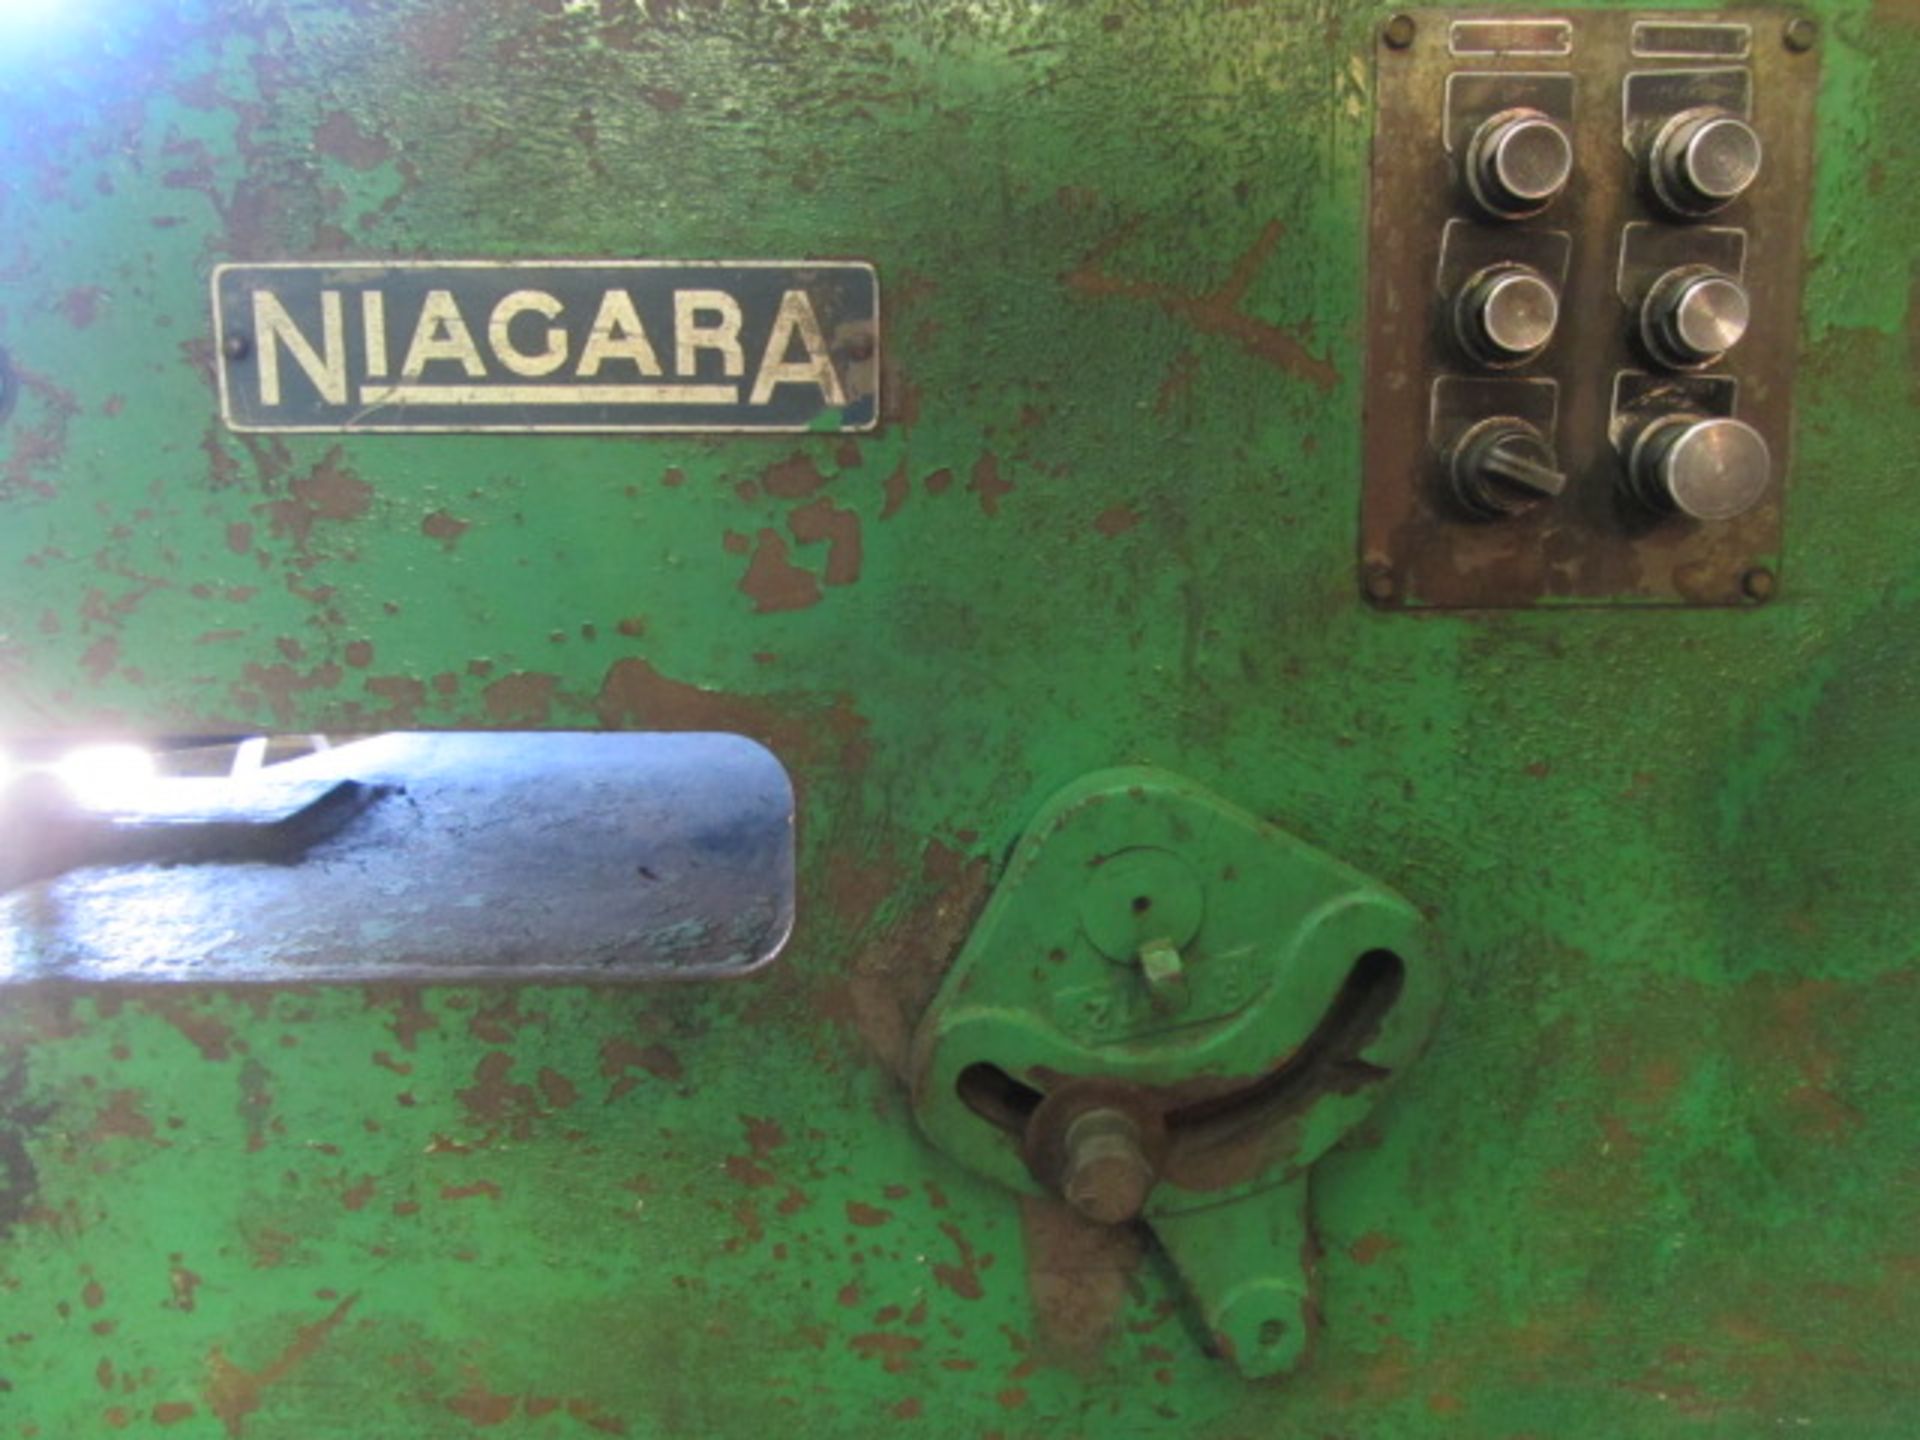 Niagara Model 8-8 Circle Shear & Flanger with 8GA Capacity x 93'' Max Diameter, sn:54445 - Image 2 of 5